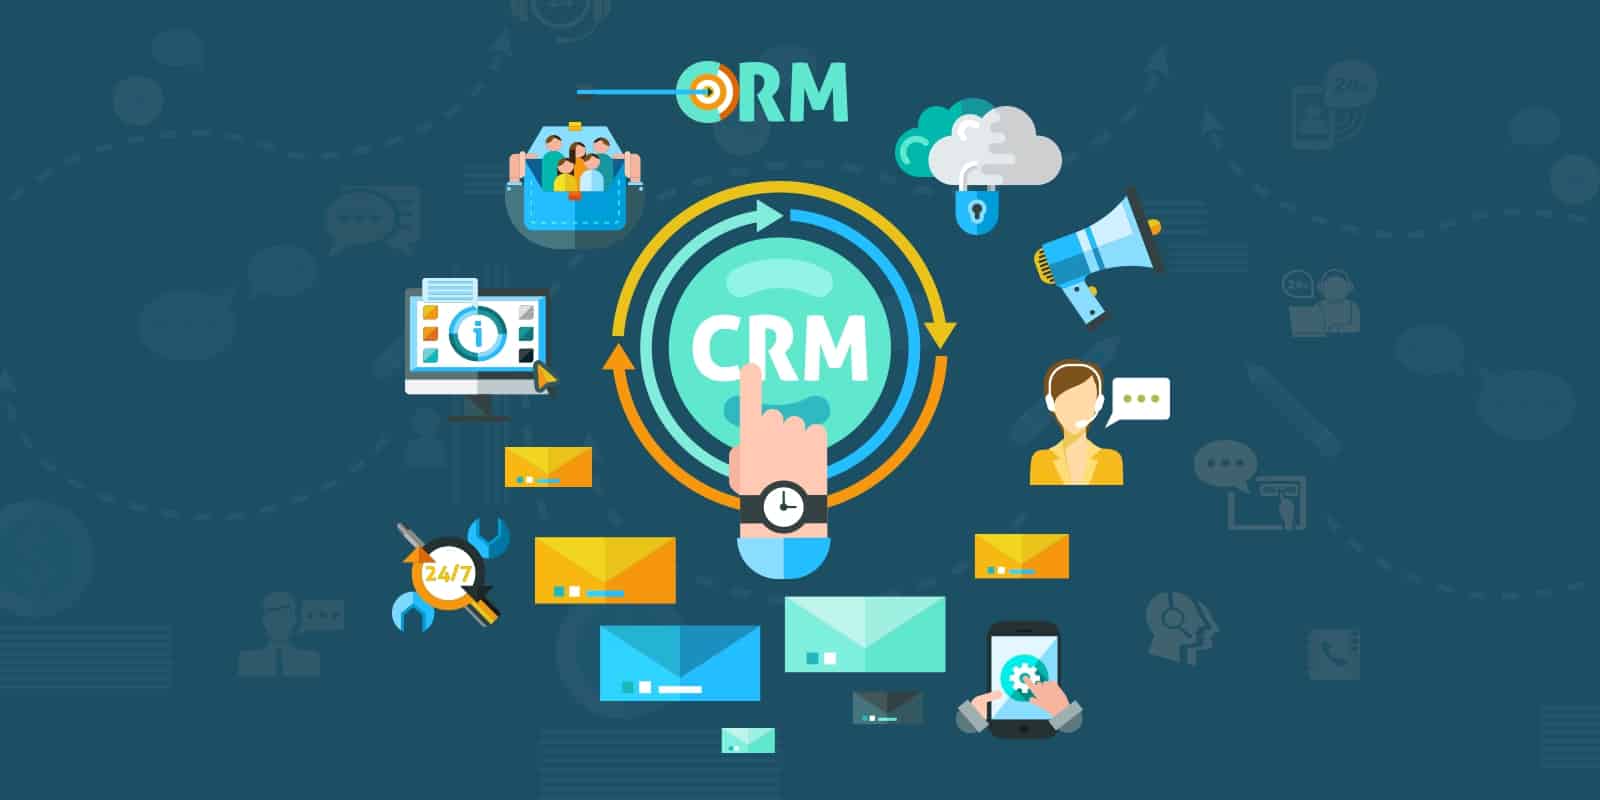 Sử dụng phần mềm CRM vào năm 2020 Dự đoán cho những thách thức kinh doanh